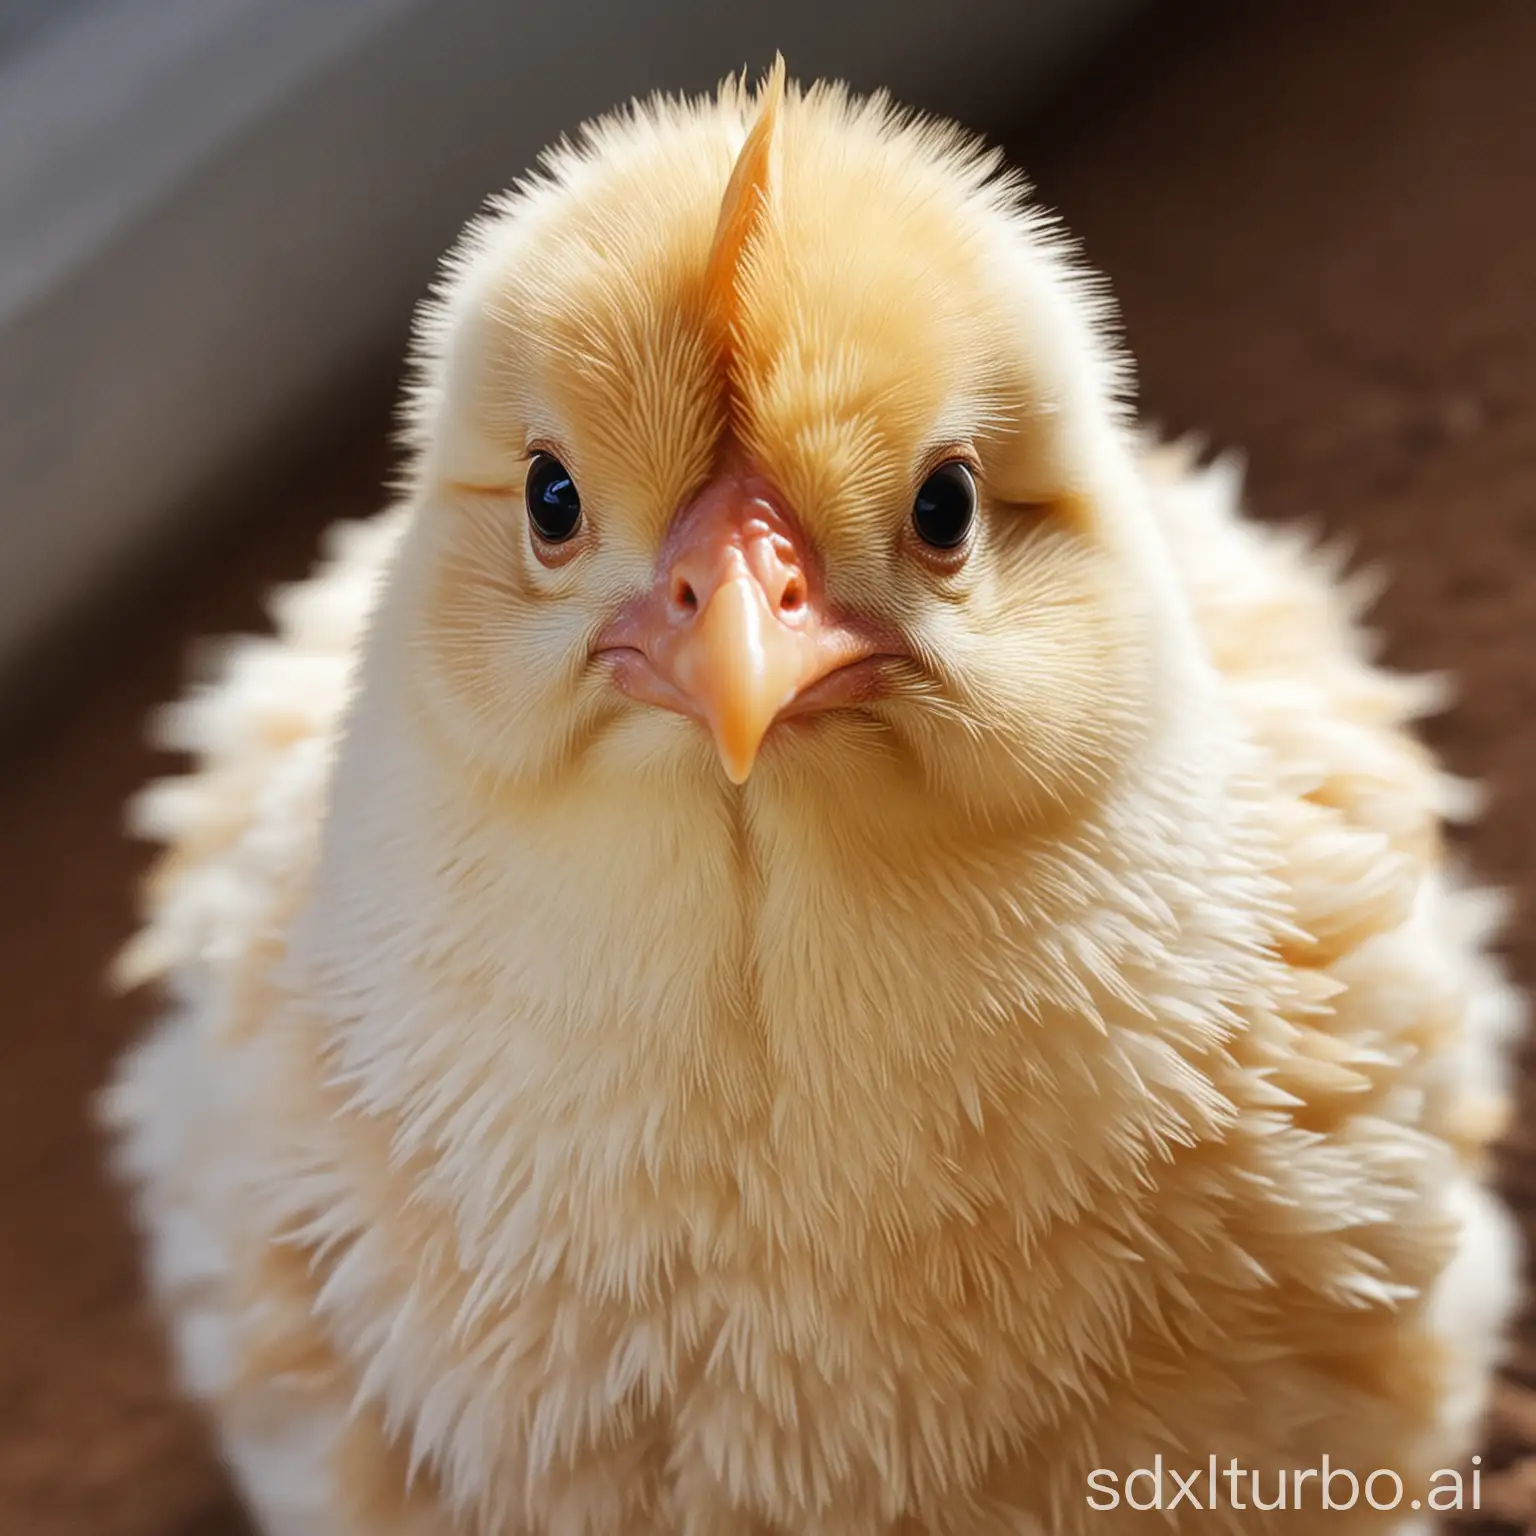 Chicken, you're so beautiful